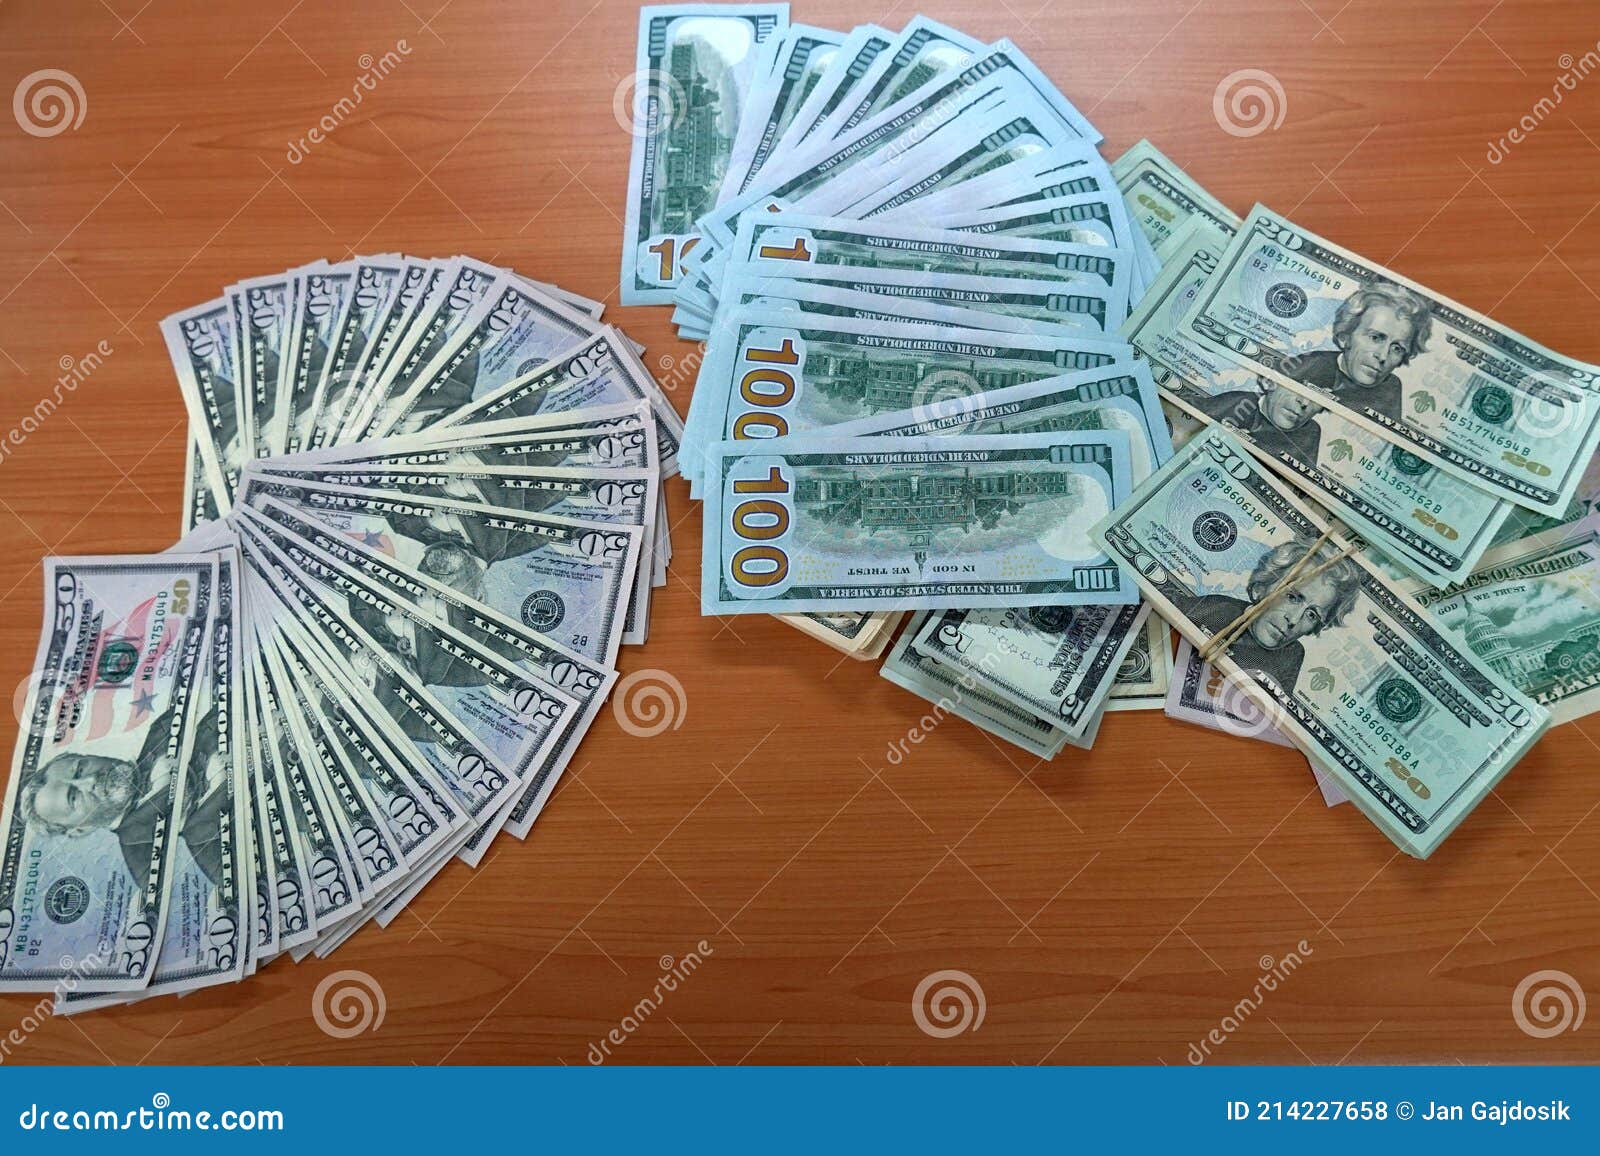 桌子上的美元纸币图片下载 - 觅知网